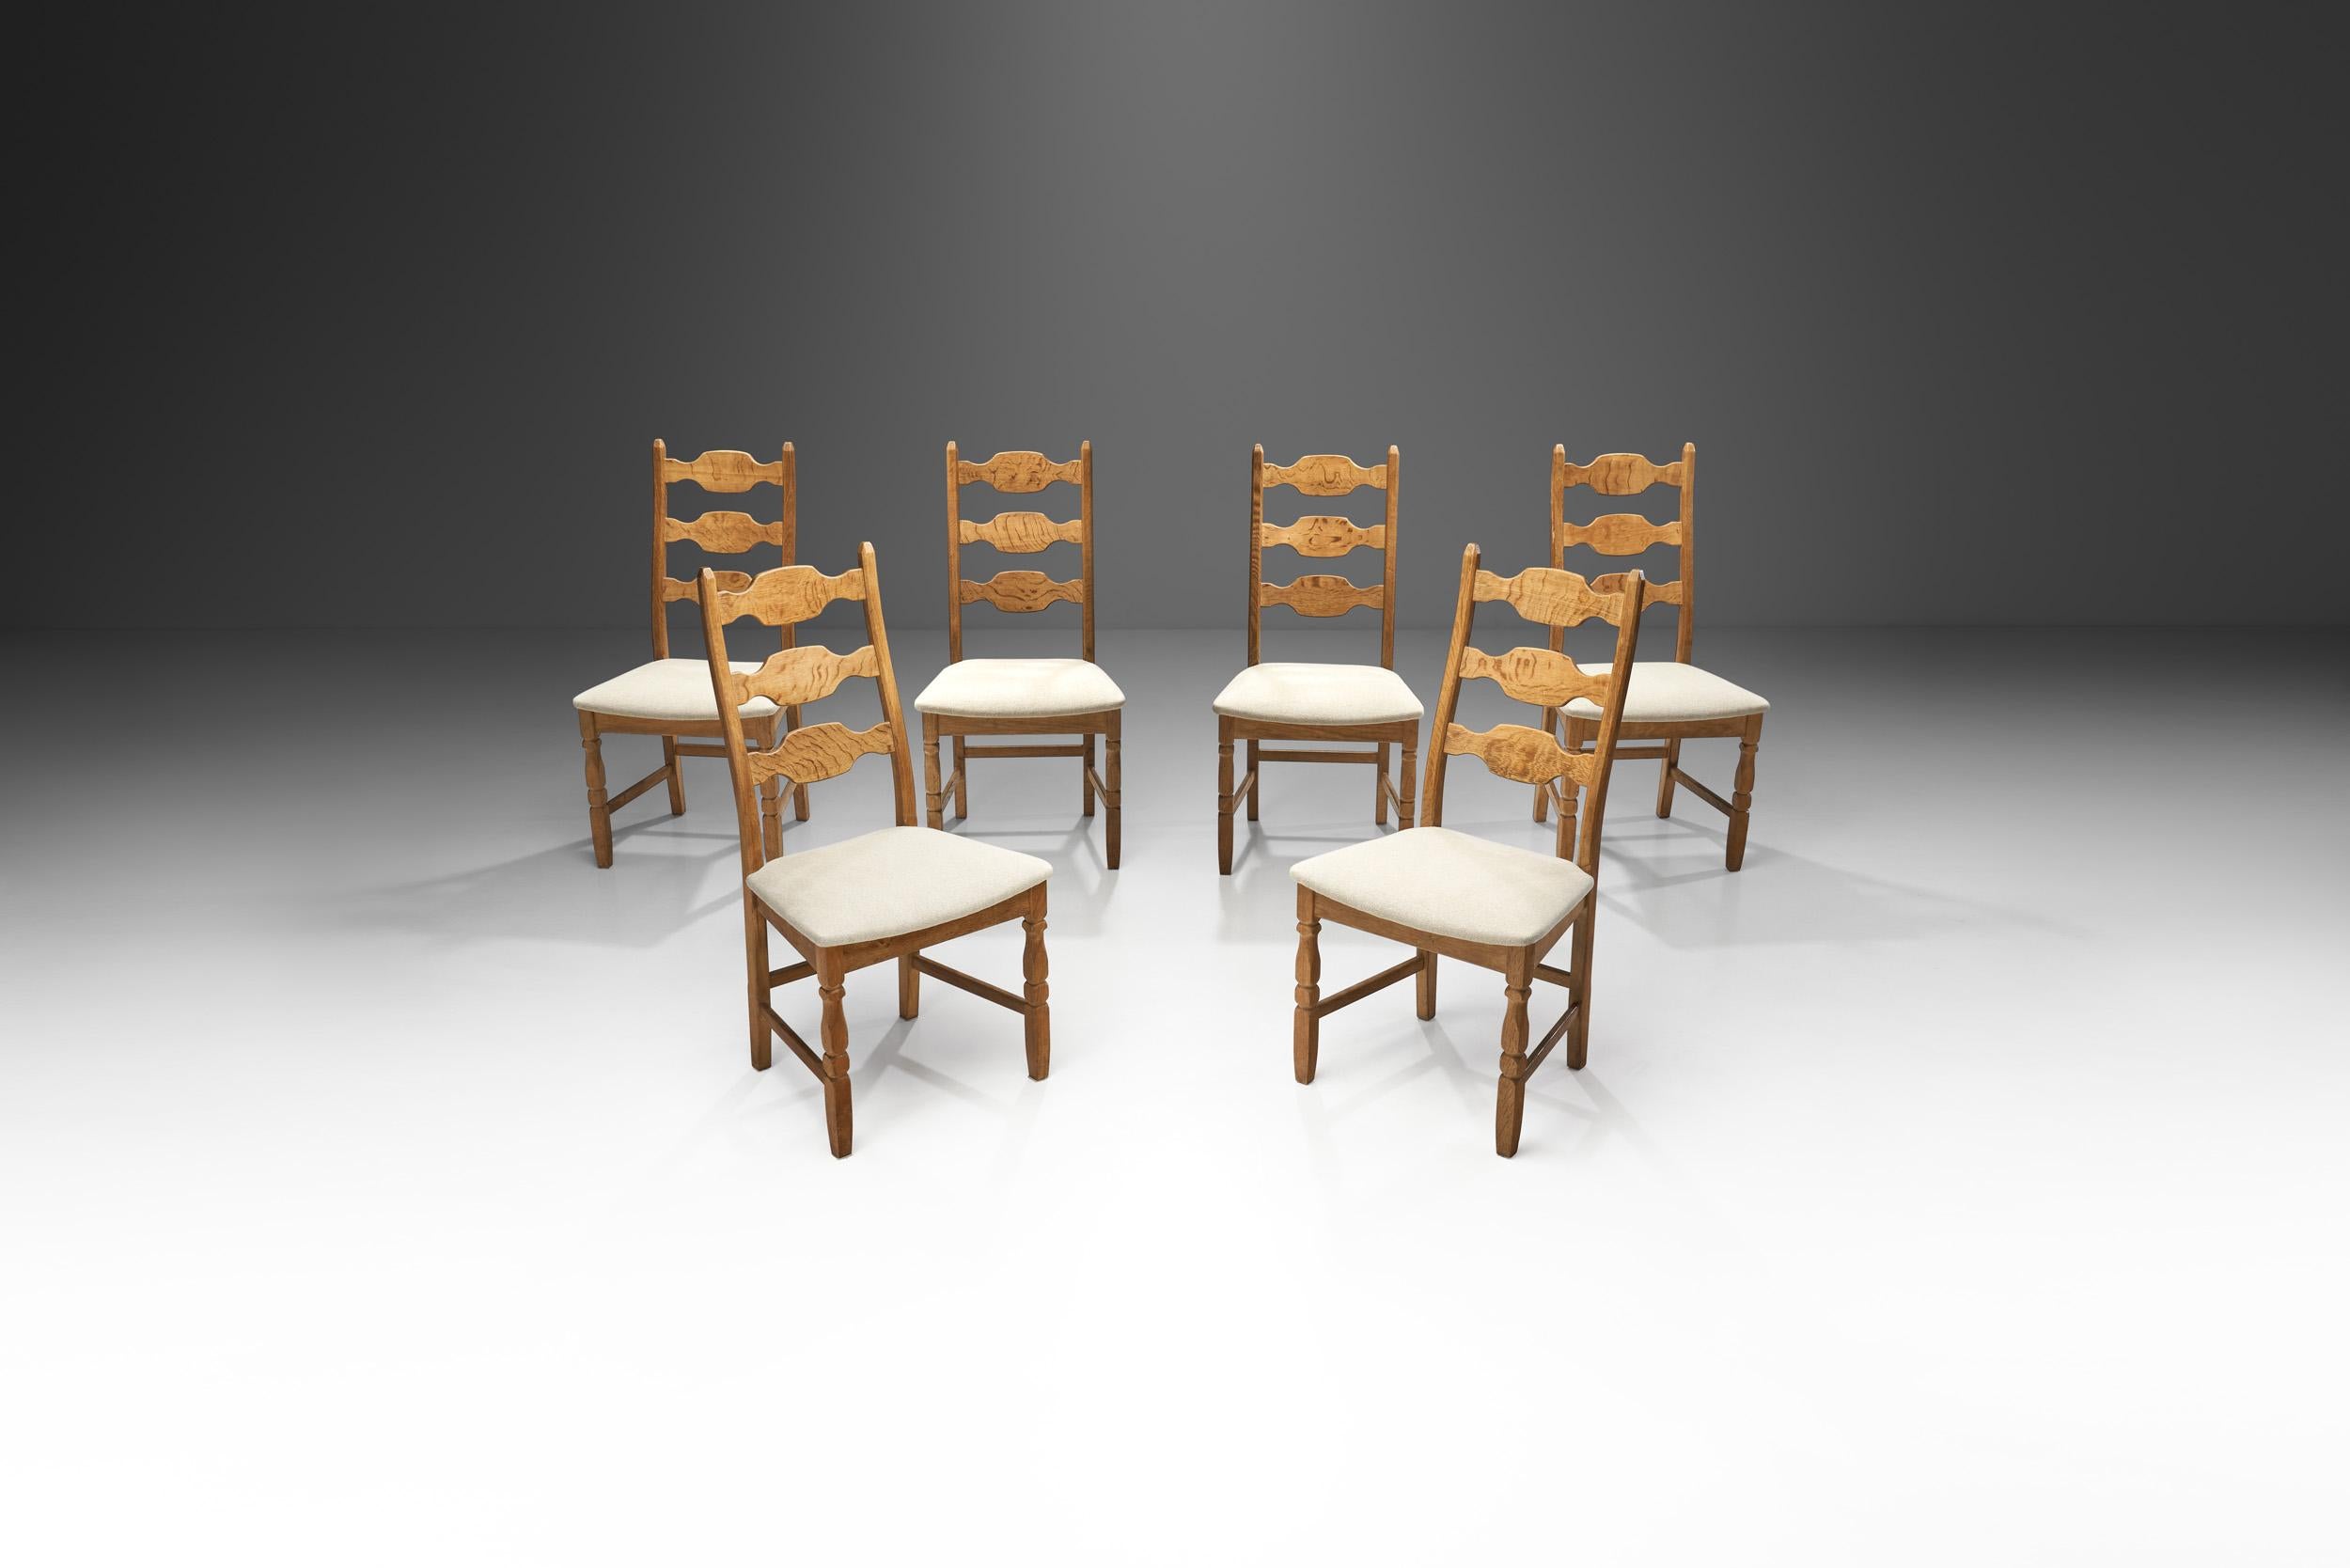 Les chaises Razorblade en chêne de Henning Kjaernulf sont les modèles les plus caractéristiques du designer. Cet ensemble a été fabriqué par la société danoise EG Kvalitetsmöbel dans les années 1960, ce qui en fait un véritable ensemble danois du